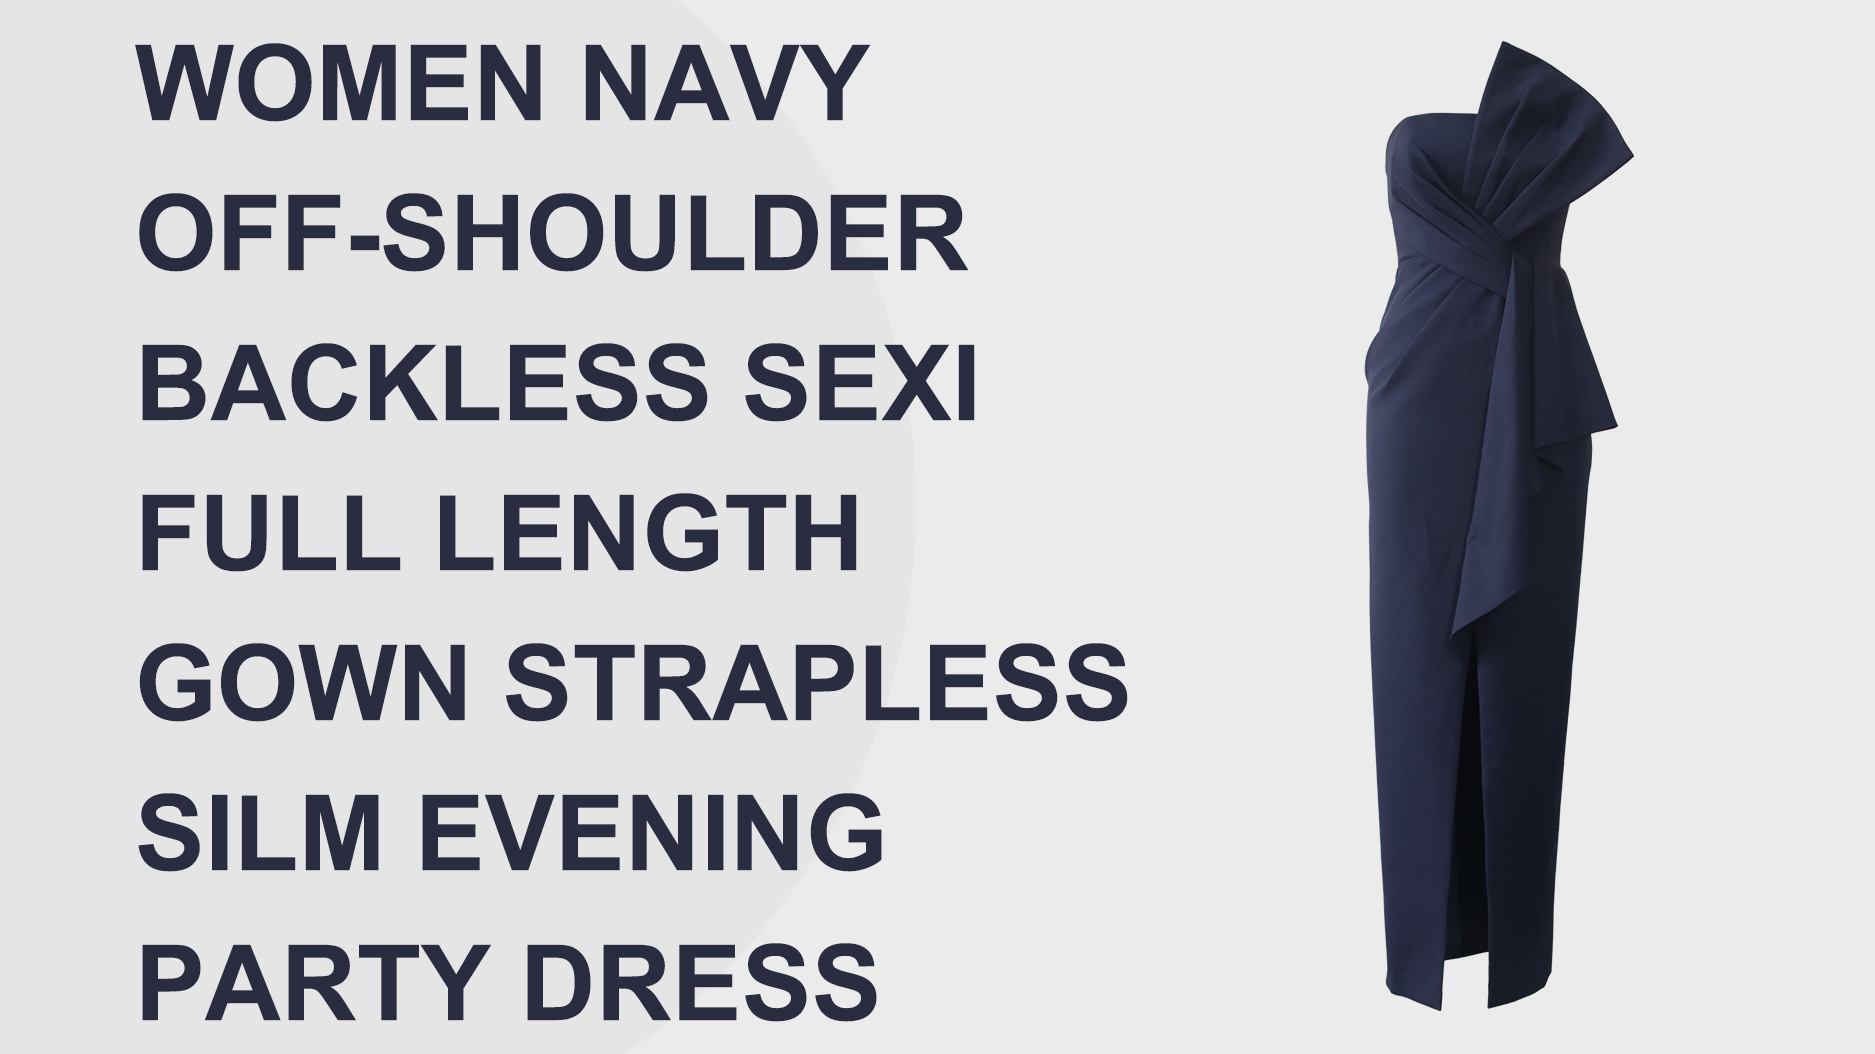 Avondfeestjurk Dames Marine off-shoulder rugloze jurk